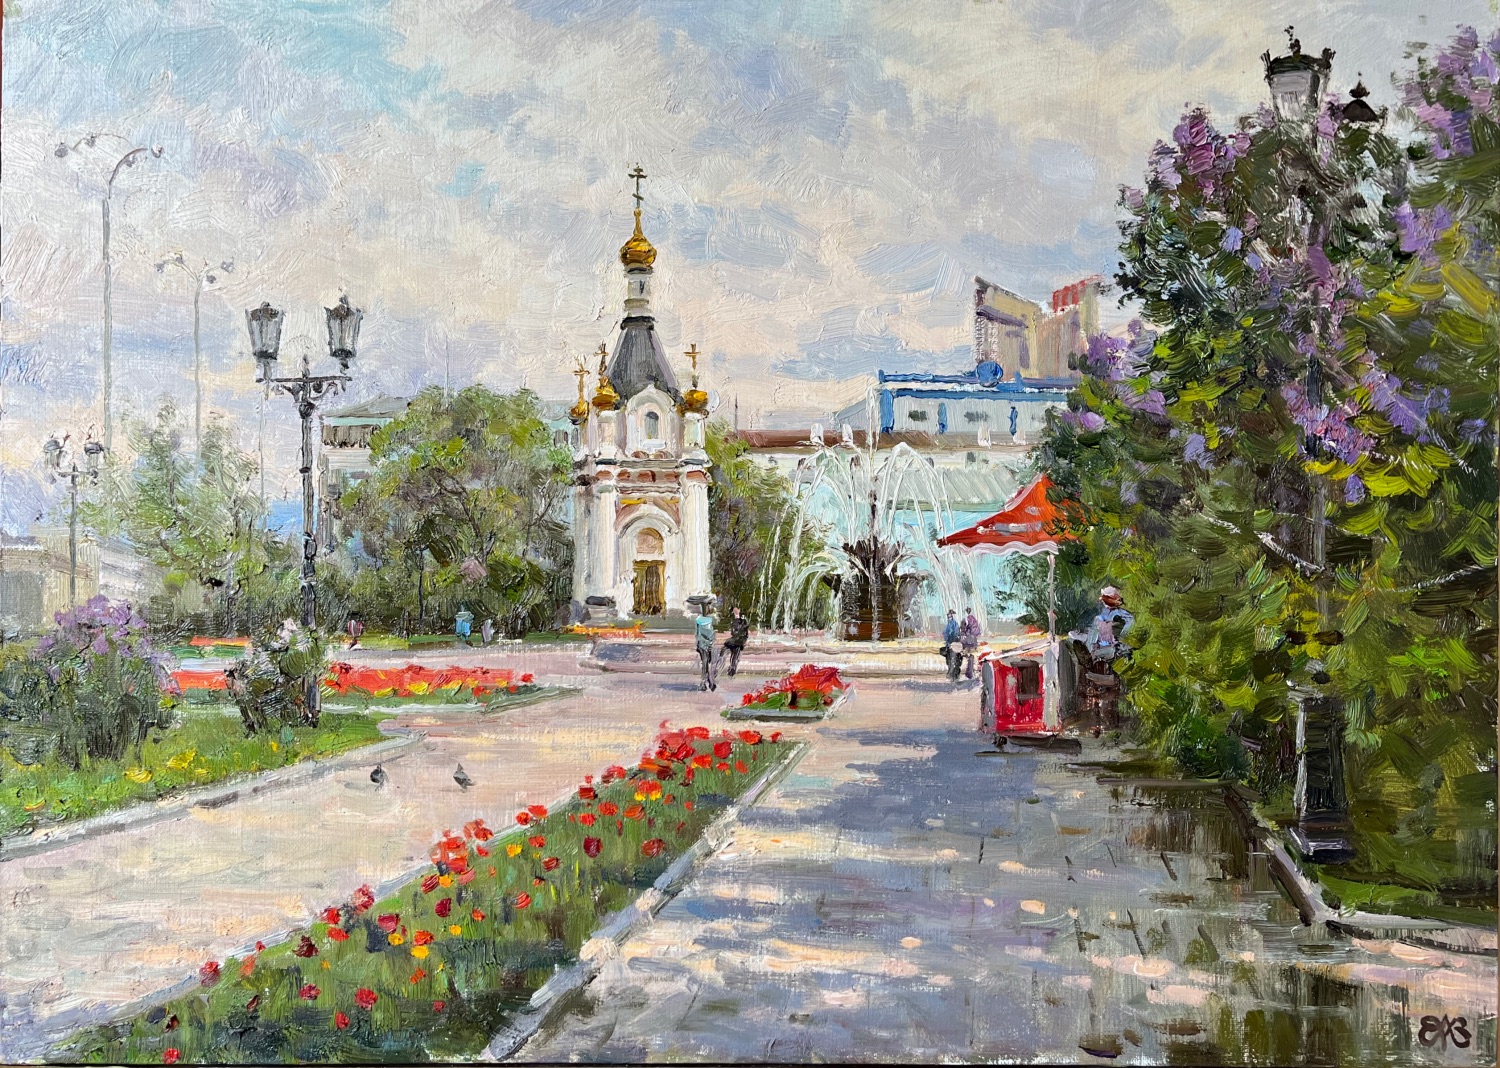 У часовни святой Екатерины - 1, Алексей Ефремов, Купить картину Масло